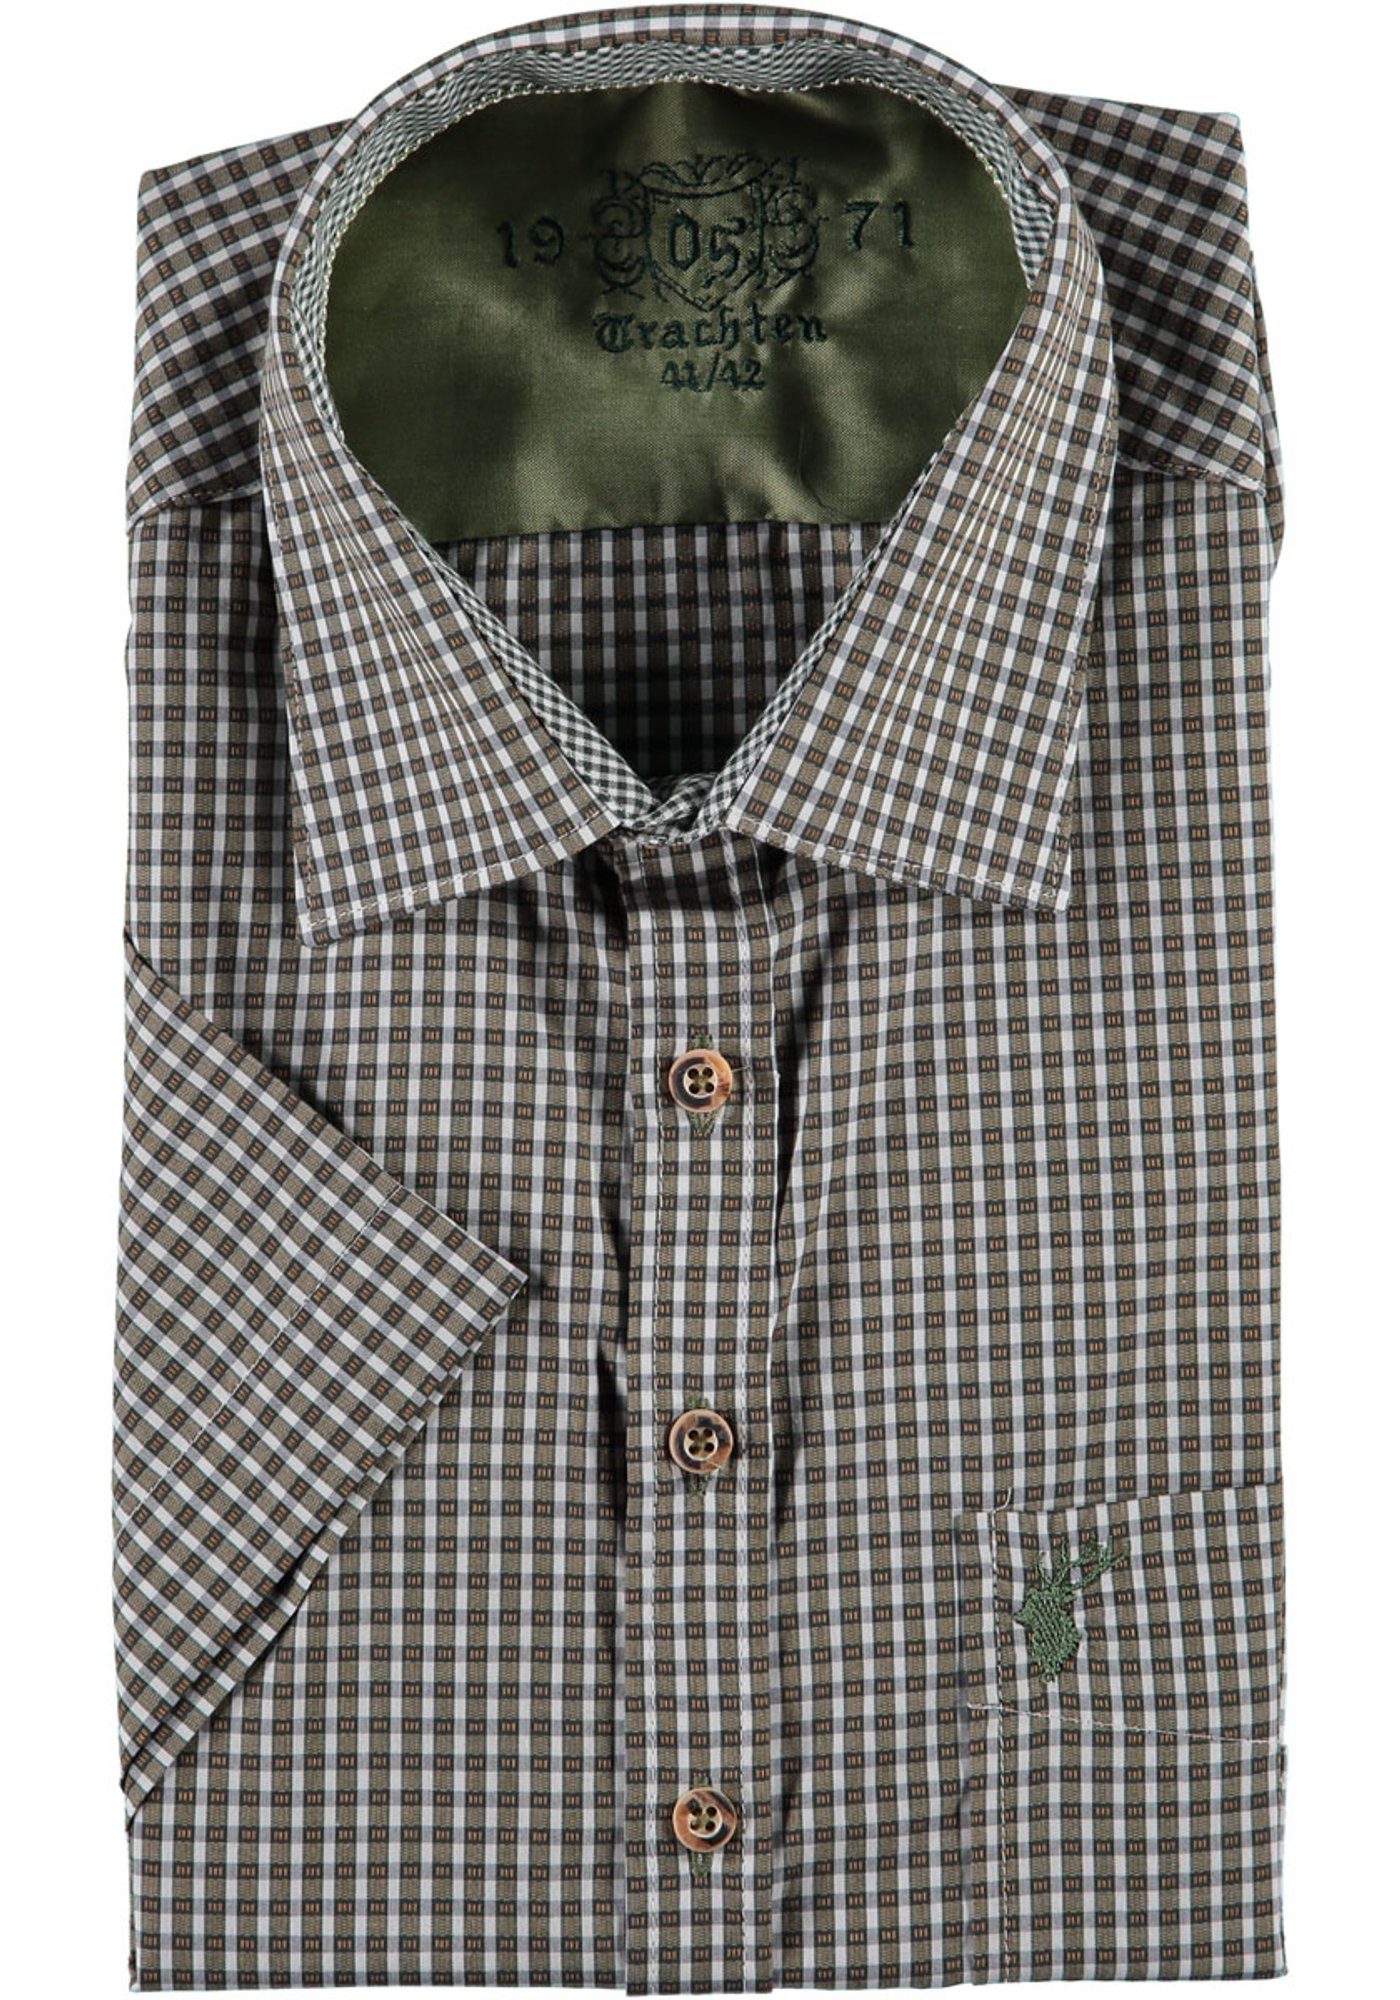 der Herren hellbraun Brusttasche mit Bruvo auf Hirsch-Stickerei Kurzarmhemd OS-Trachten Trachtenhemd